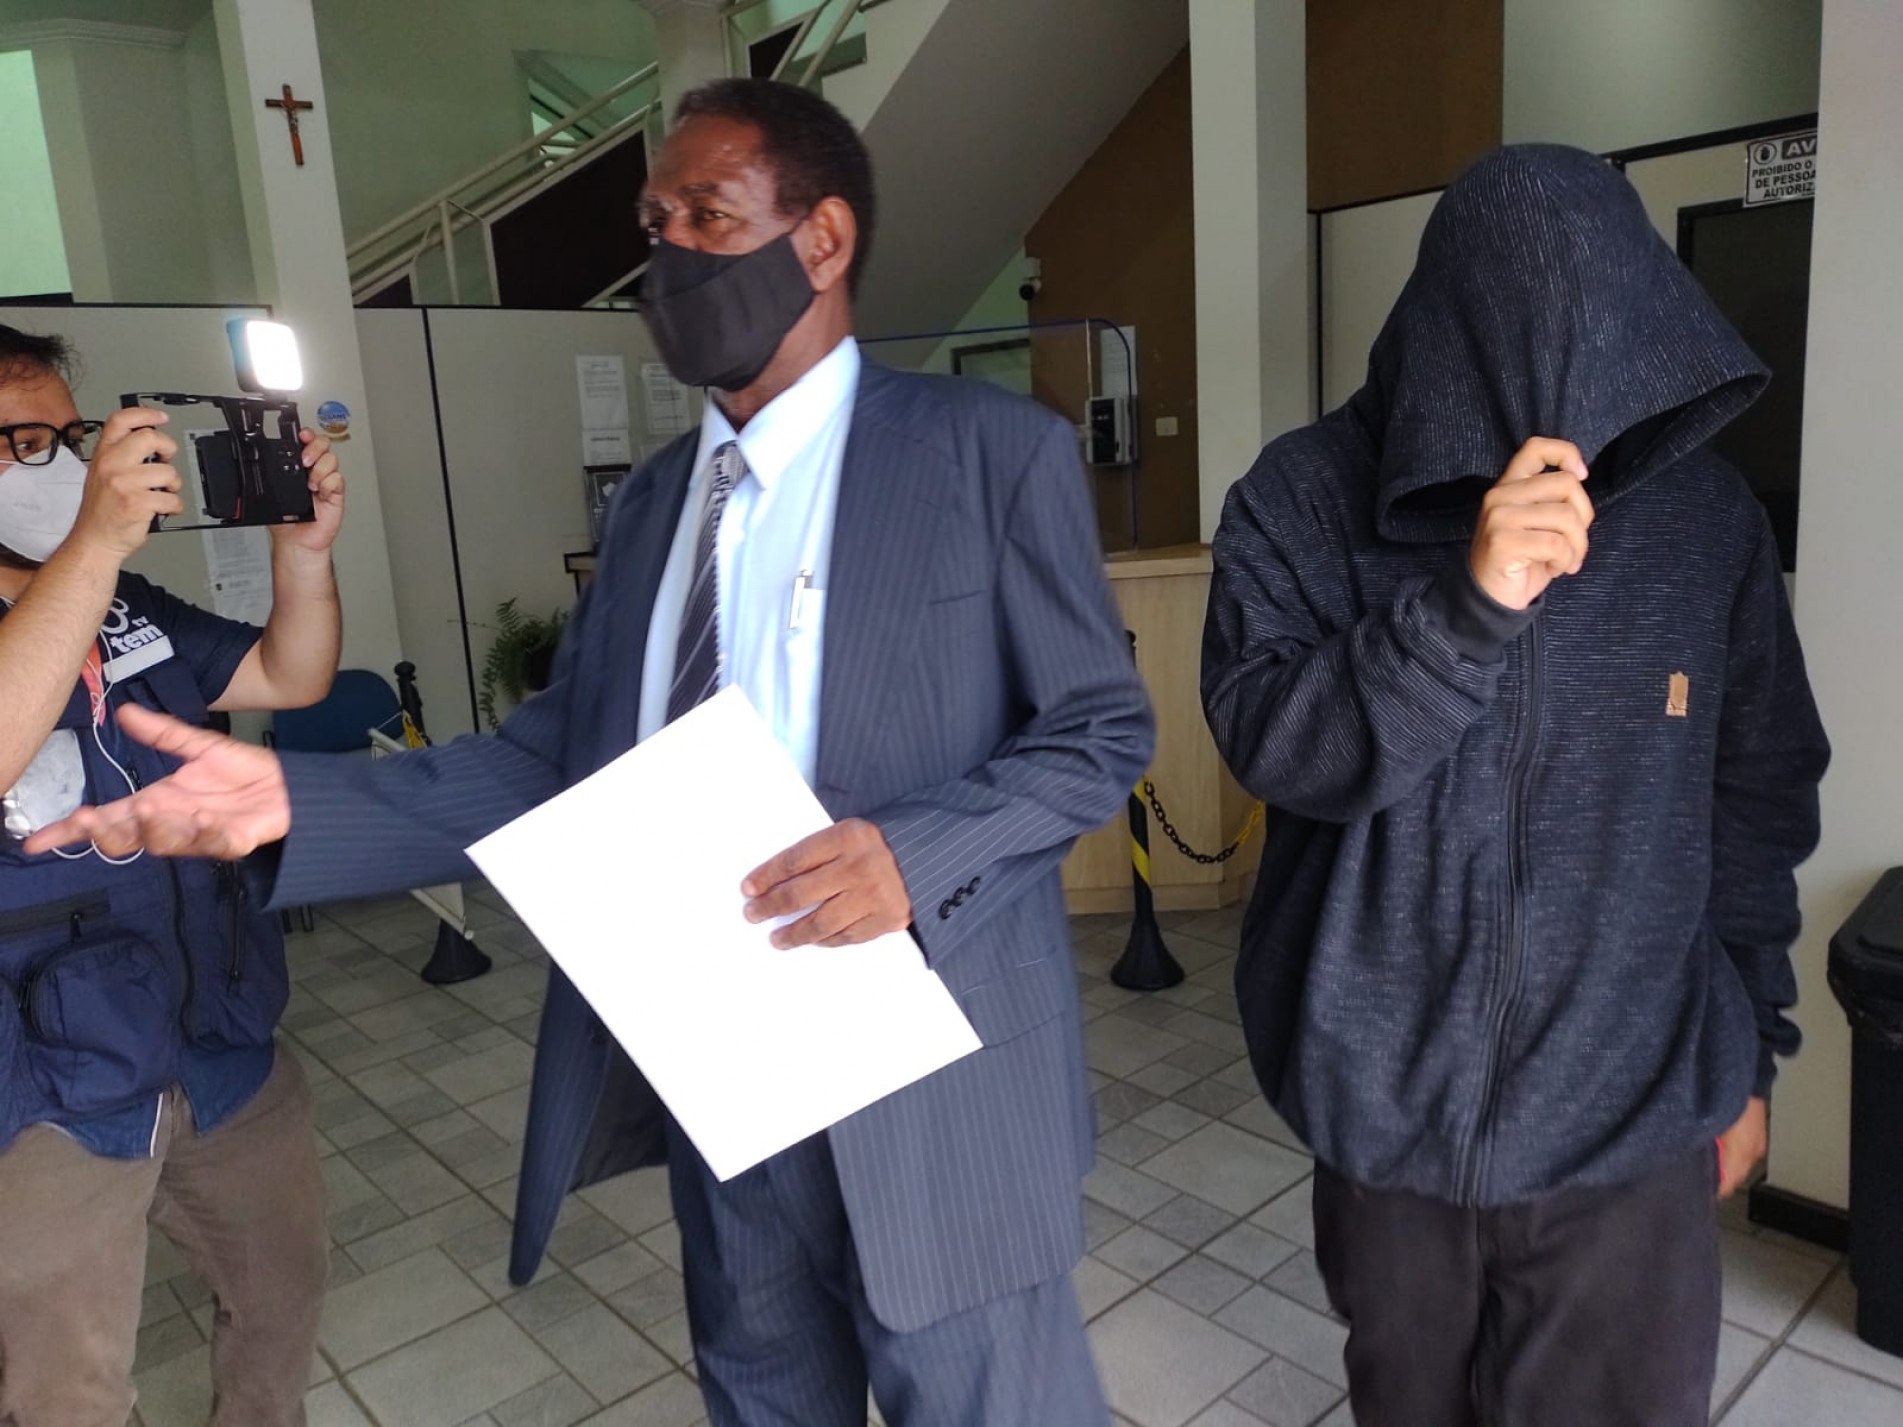 O jovem prestou depoimento no 3ª Distrito Policial de Sorocaba, ao lado do advogado